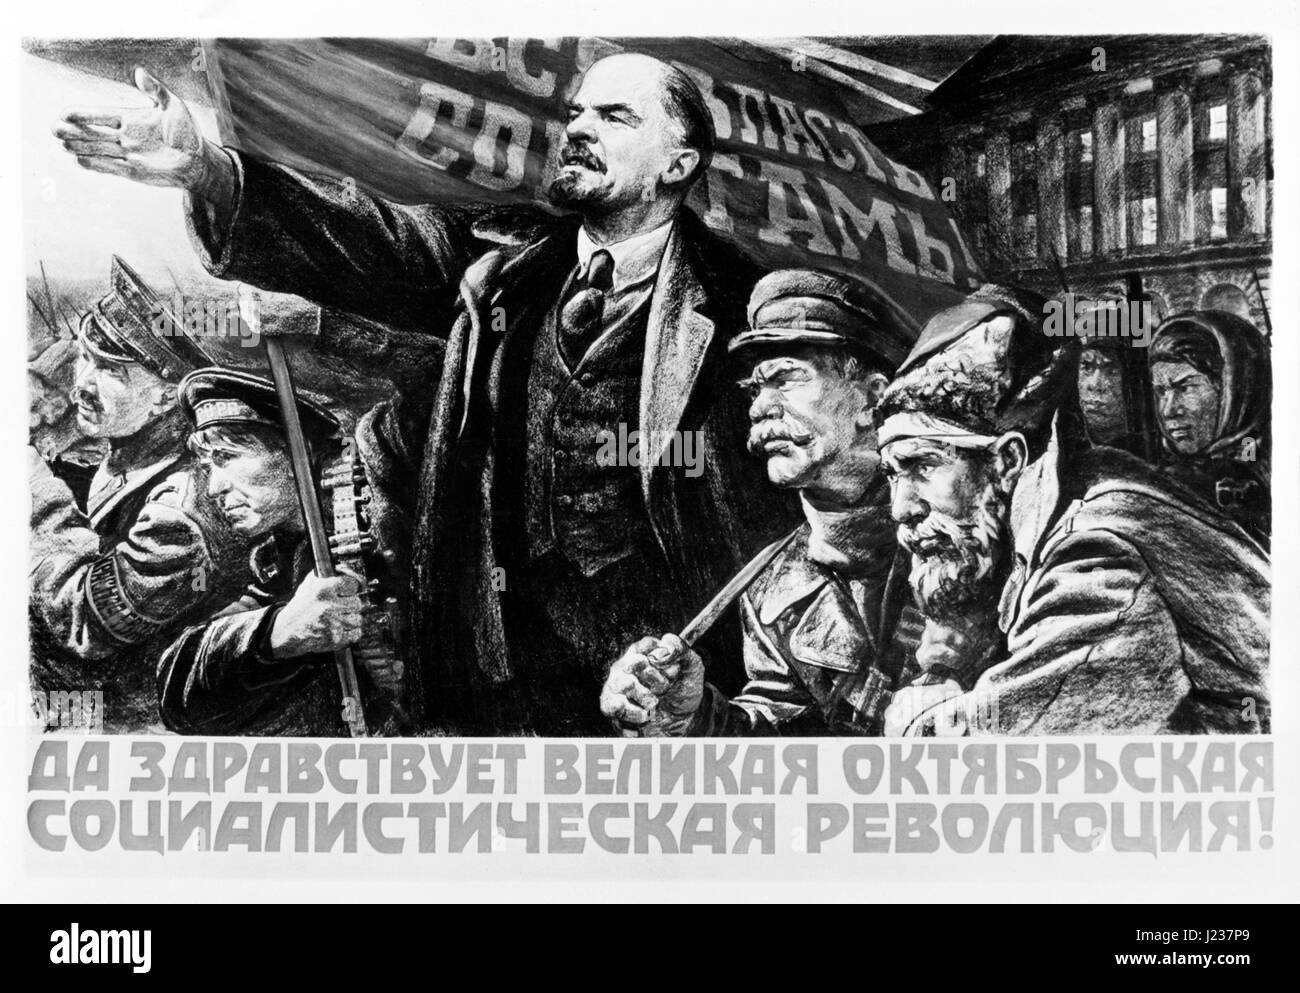 Sowjetischen Plakat mit dem Zitat: "Es lebe die große sozialistische Oktoberrevolution!". Die Arbeit ist des Künstlers A. Kuznetsov. Verlag IZOGIZ. Stockfoto